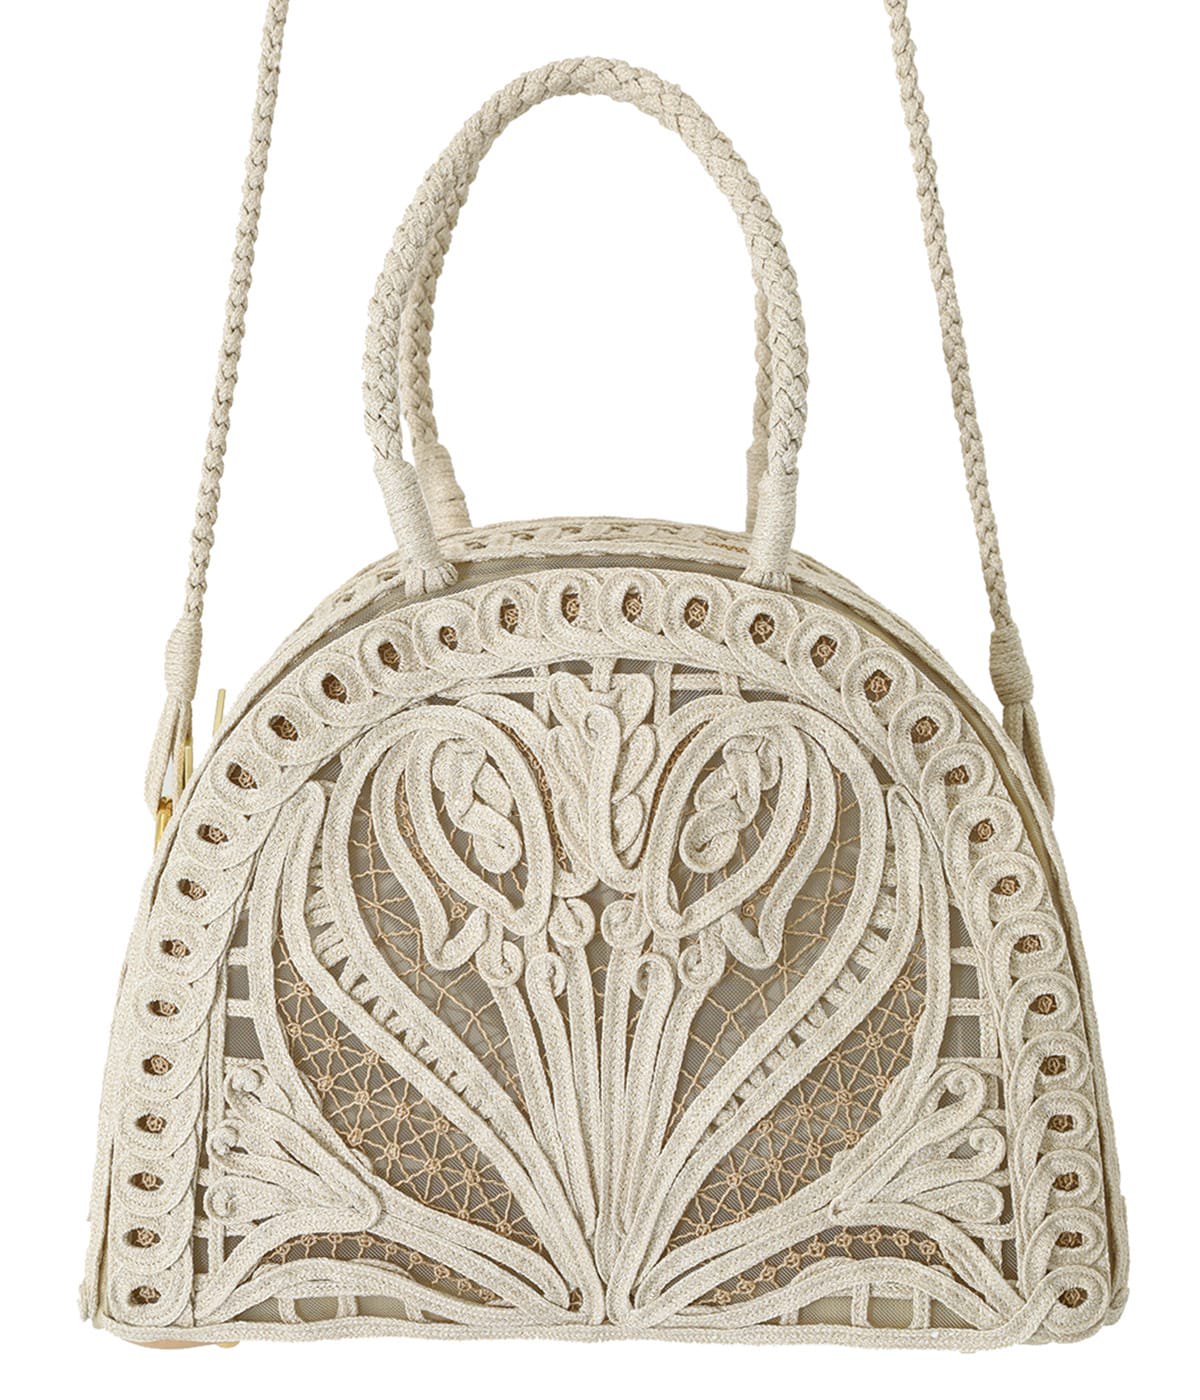 【レディース】Cording Embroidery Demi Lune Handbag